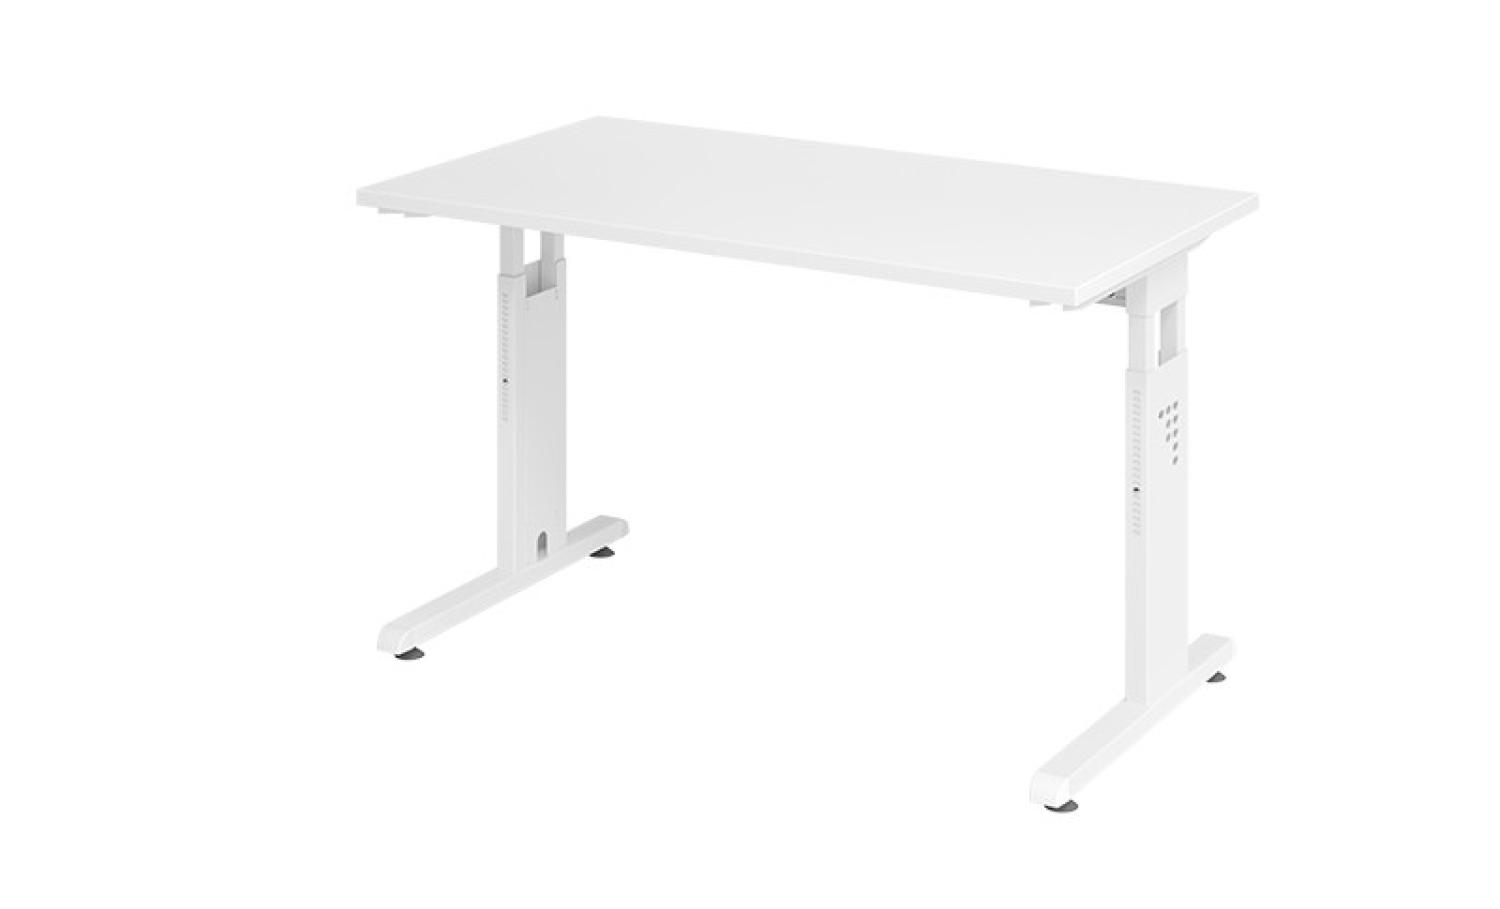 mcbuero.de 'OS612' Schreibtisch mit C-Fuß, Holz/Metall Weiß/Silber, 85 x 67 x 120 cm Bild 1